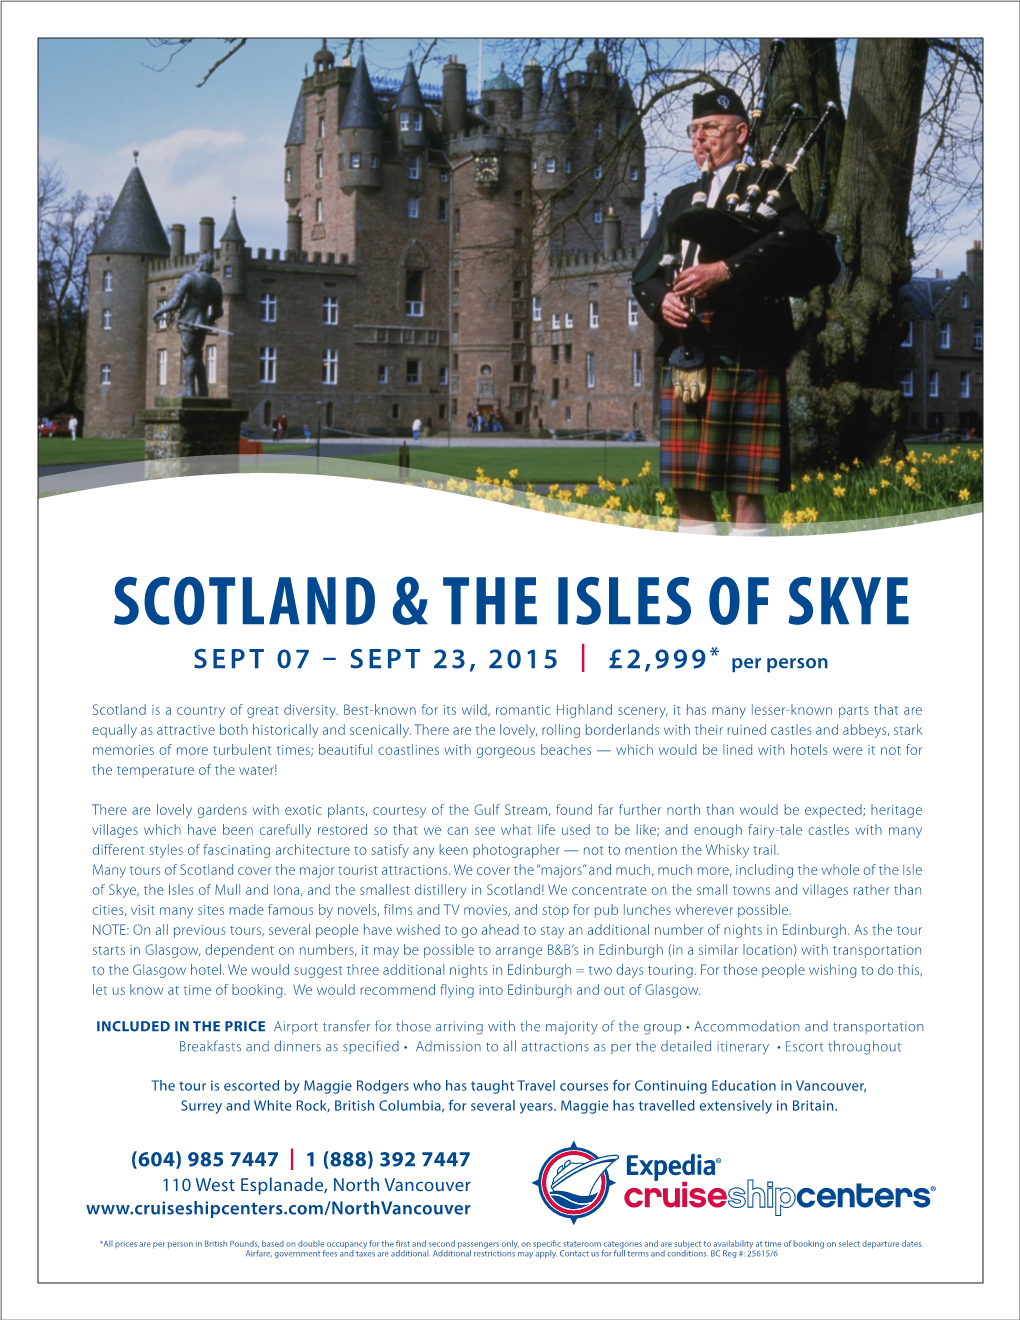 Scotland & the Isles of Skye